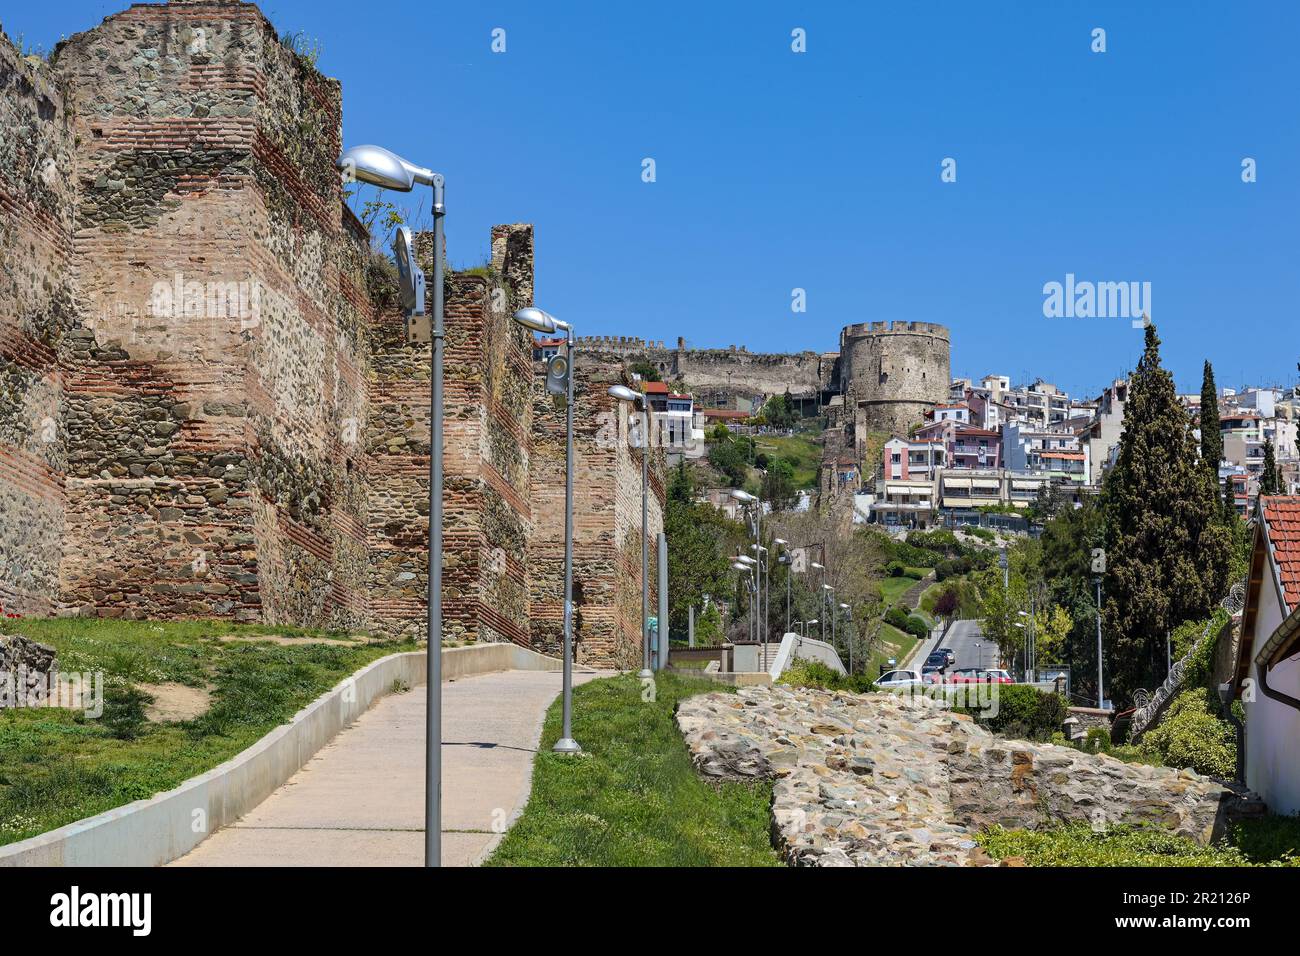 Fußweg entlang der byzantinischen Stadtmauer bis zur historischen Festung Thessaloniki in Mazedonien, Griechenland, Wahrzeichen und berühmtes Touristenziel, BL Stockfoto